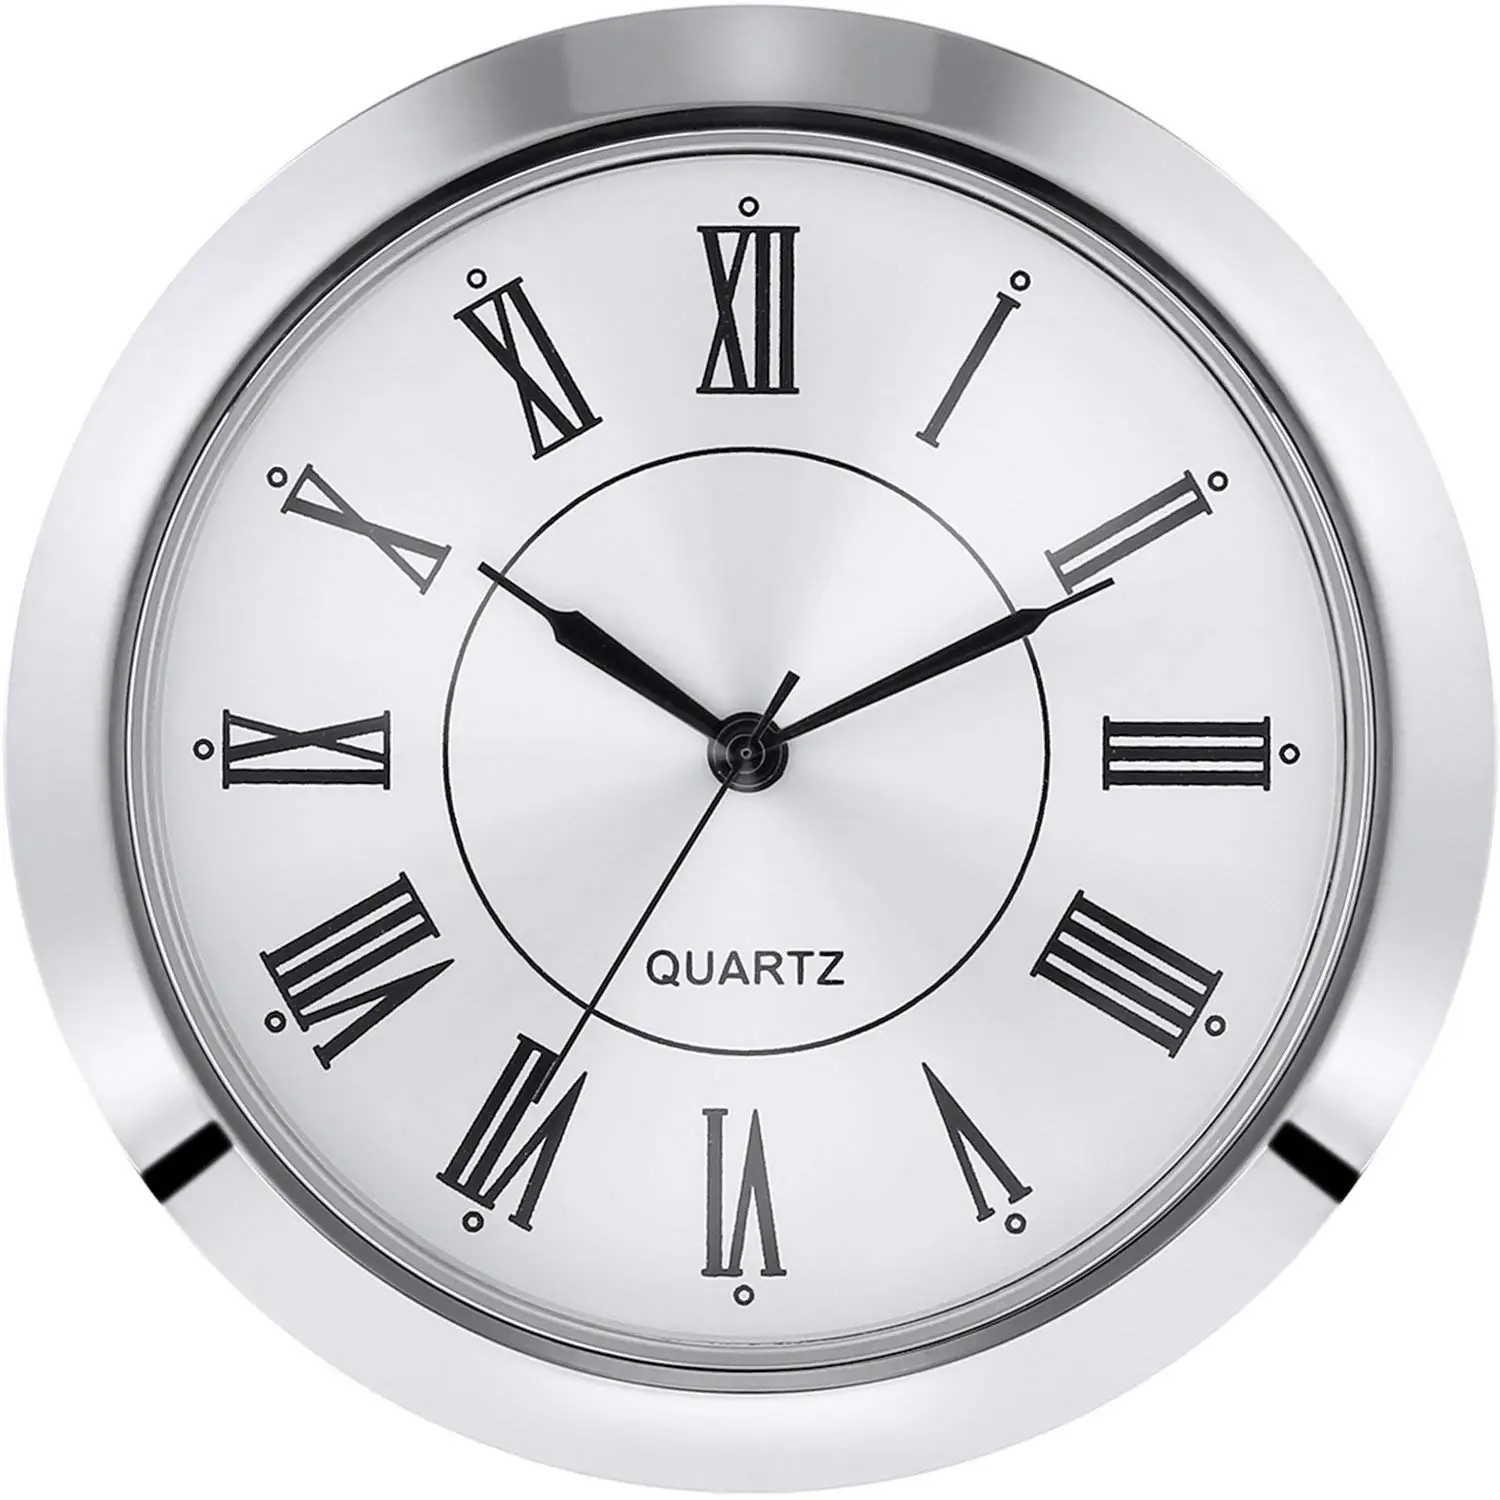 1 55 часа. Часы с римским циферблатом. Часы с римскими цифрами. Часы кварцевые циферблат. Часы для вставки.